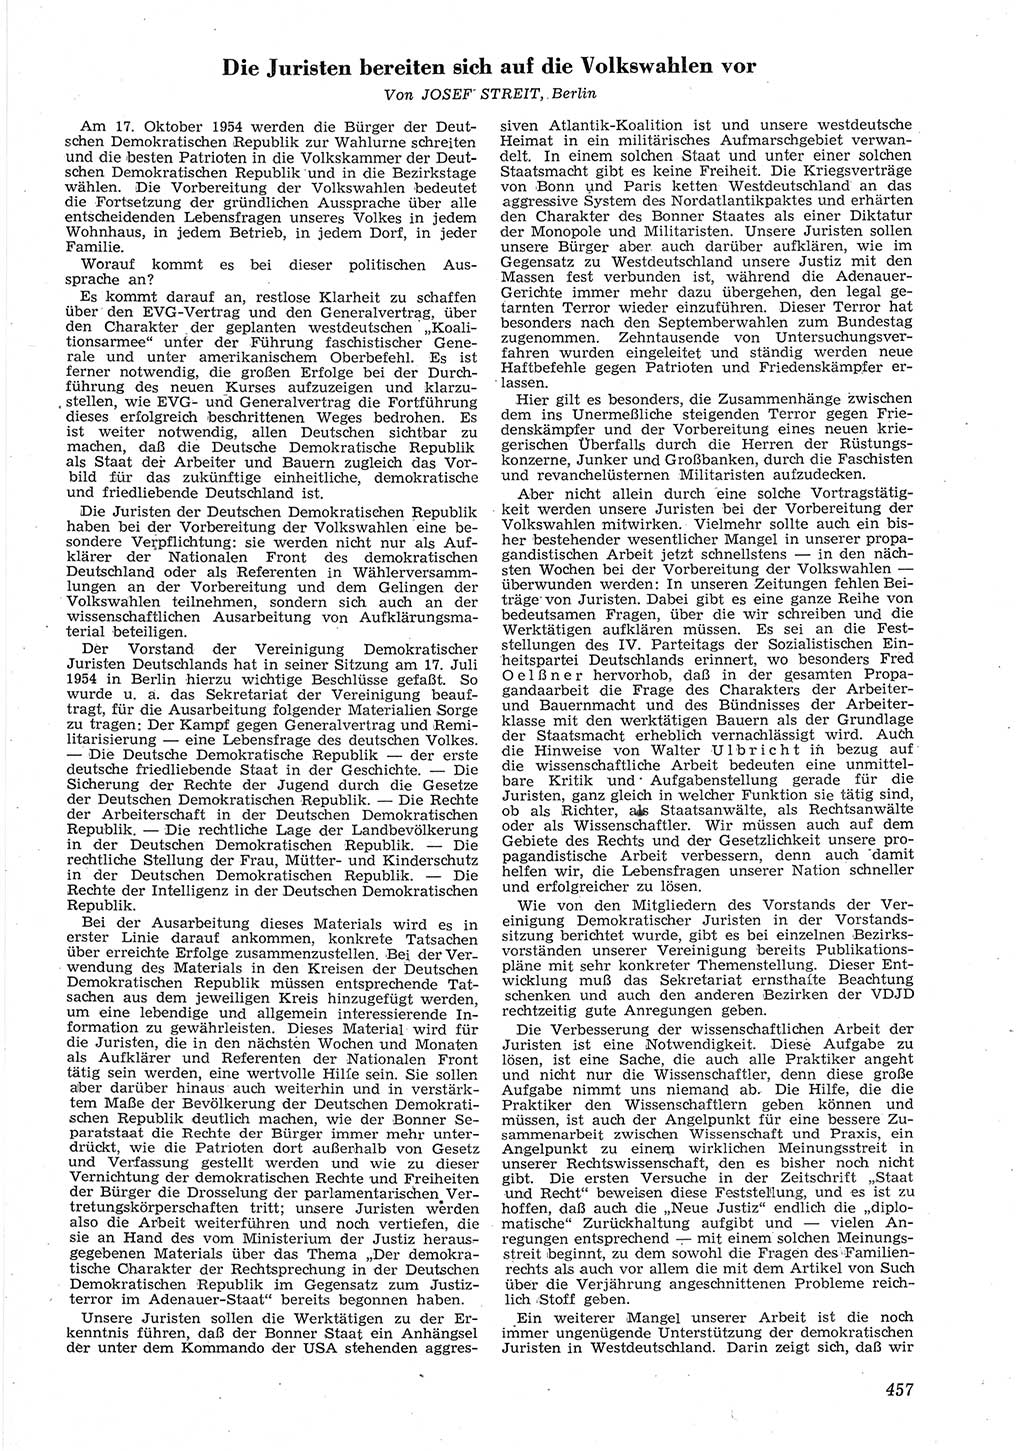 Neue Justiz (NJ), Zeitschrift für Recht und Rechtswissenschaft [Deutsche Demokratische Republik (DDR)], 8. Jahrgang 1954, Seite 457 (NJ DDR 1954, S. 457)